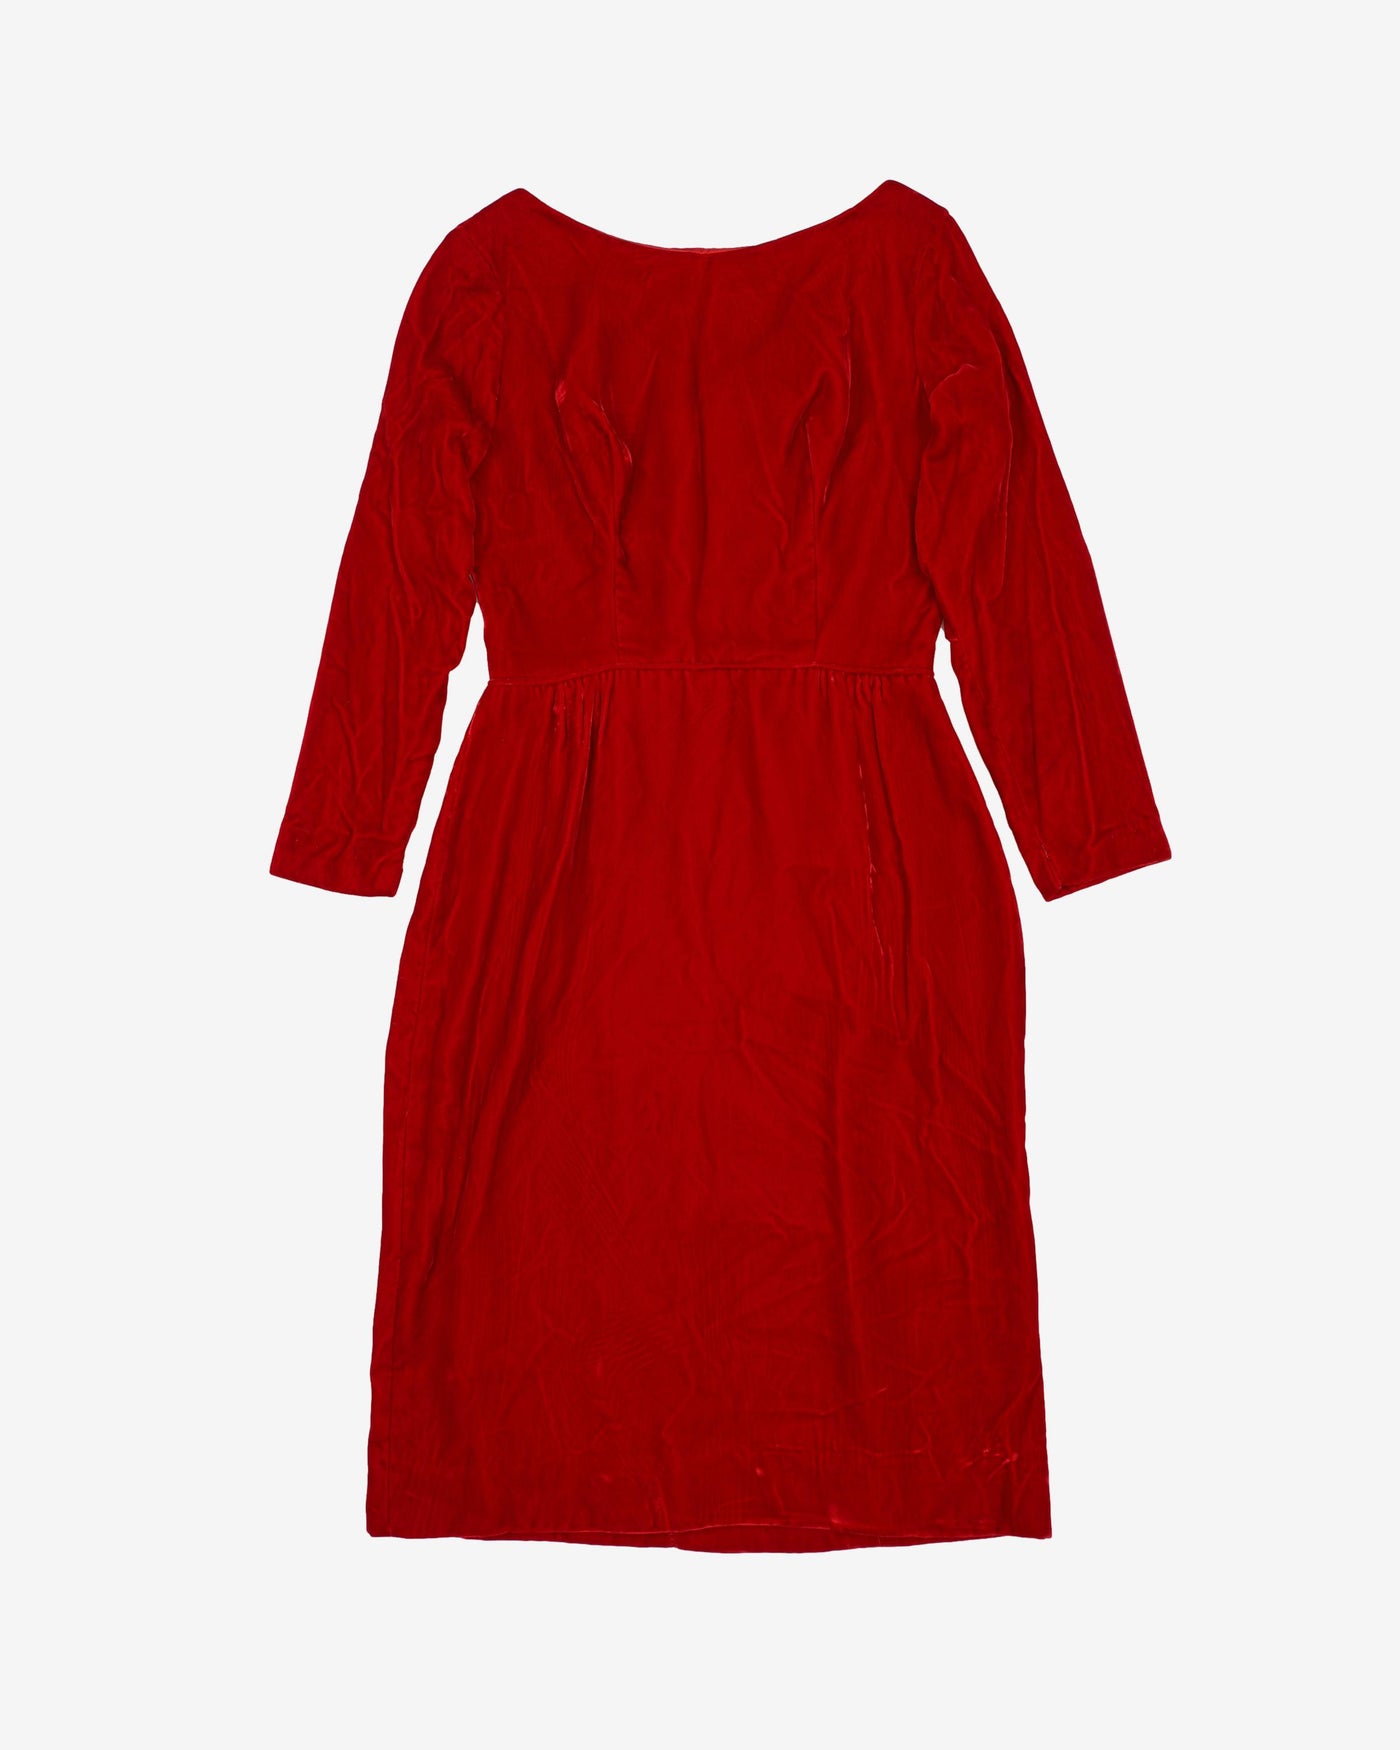 1950s Red Velvet Evening Dress - S